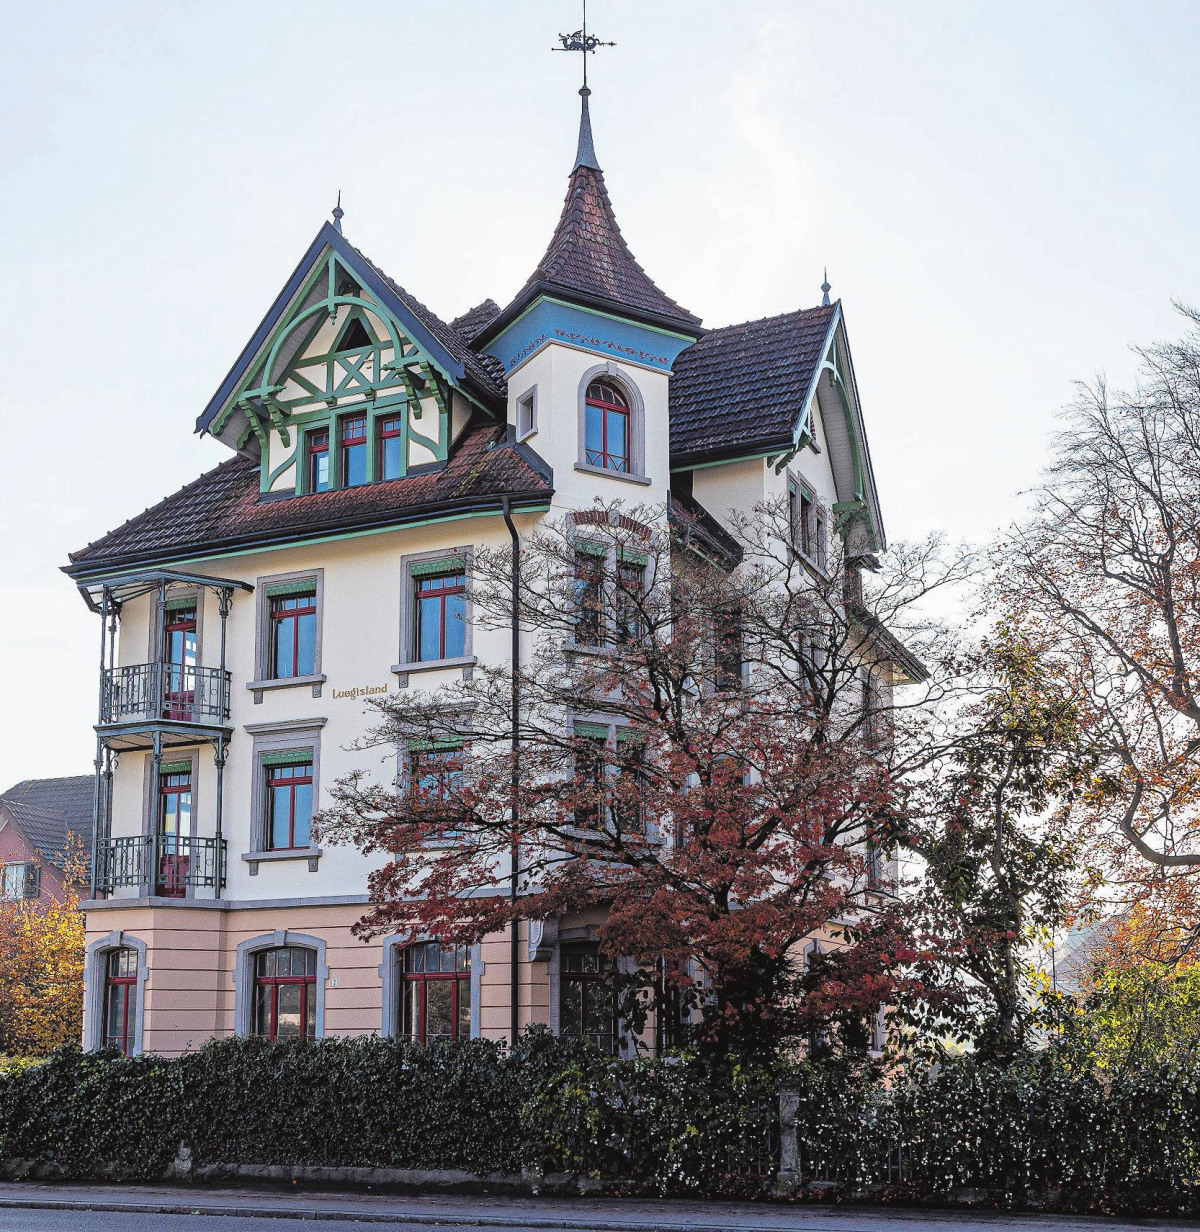 Historische Villa Luegisland: Sanierung durch Klemens Dudli aus Wil